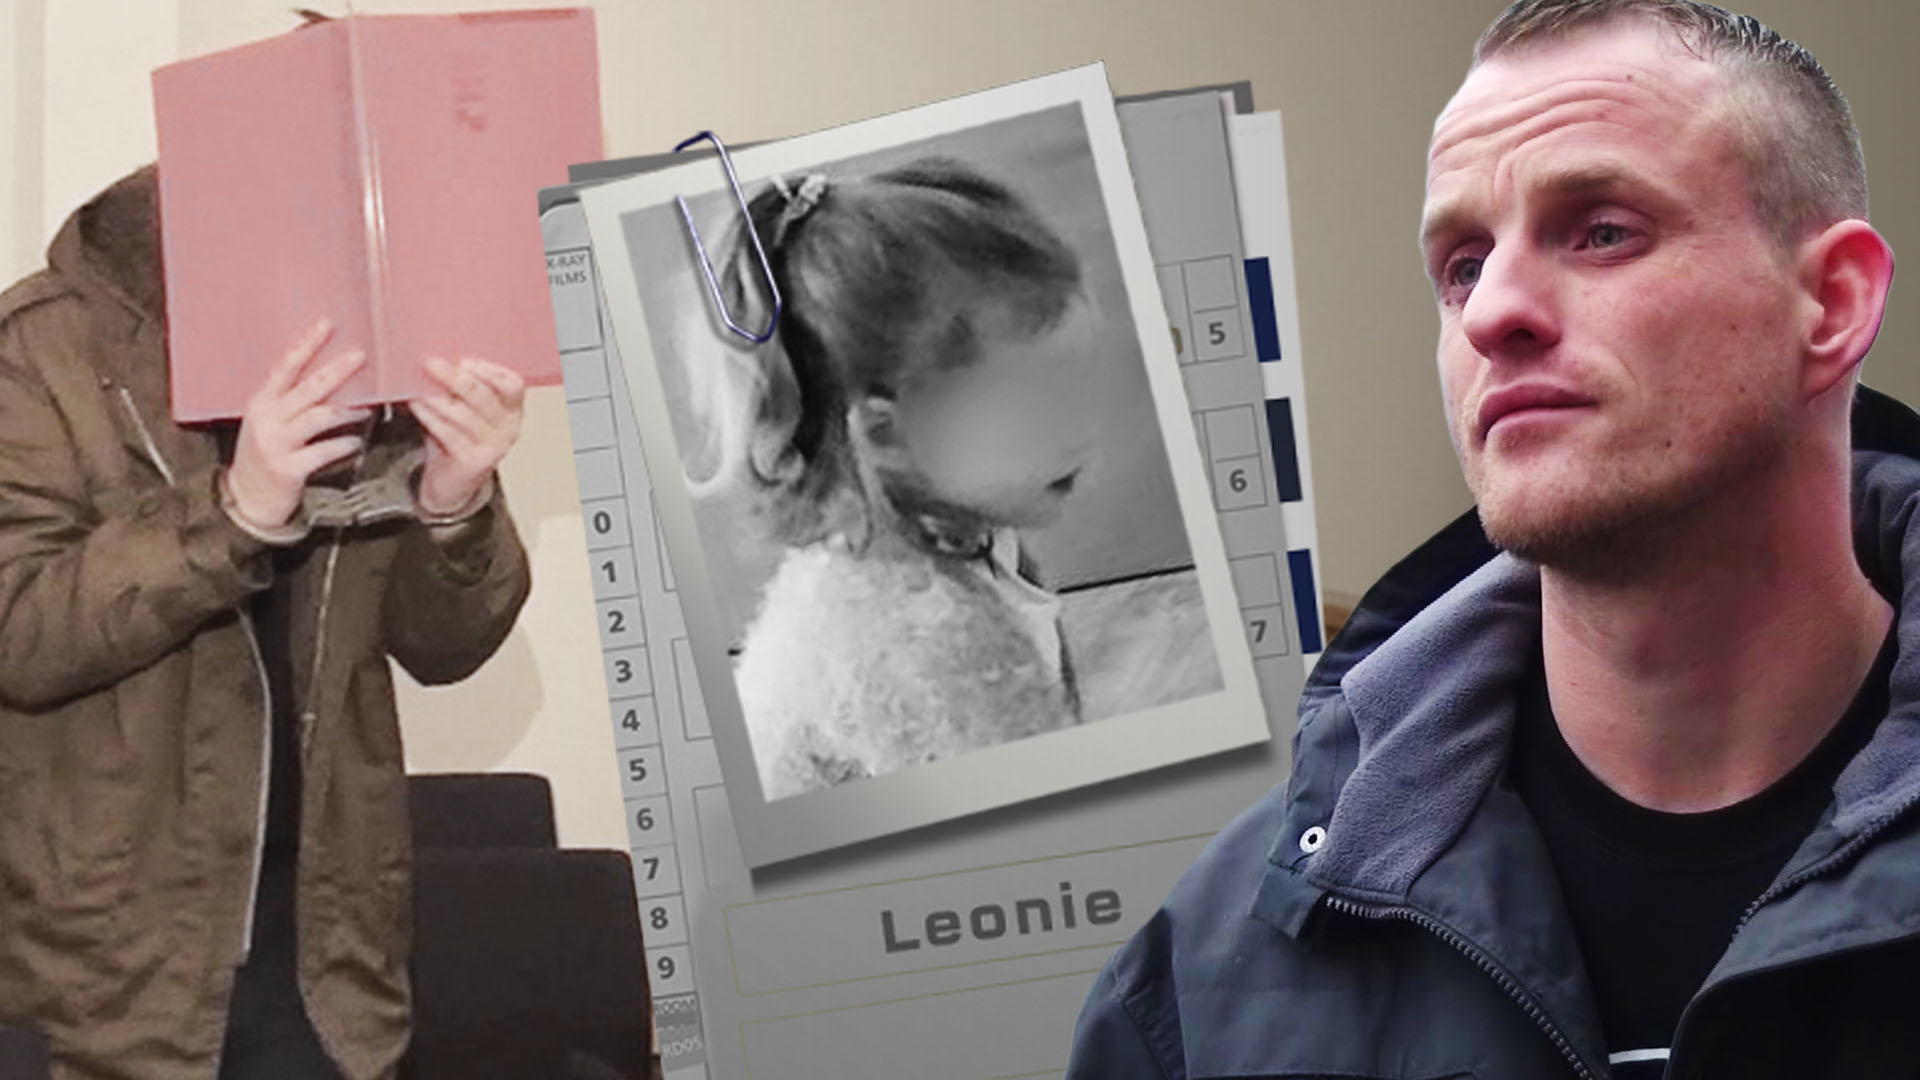 So reagiert der leibliche Vater auf das Urteil Lebenslang für Leonies Stiefvater